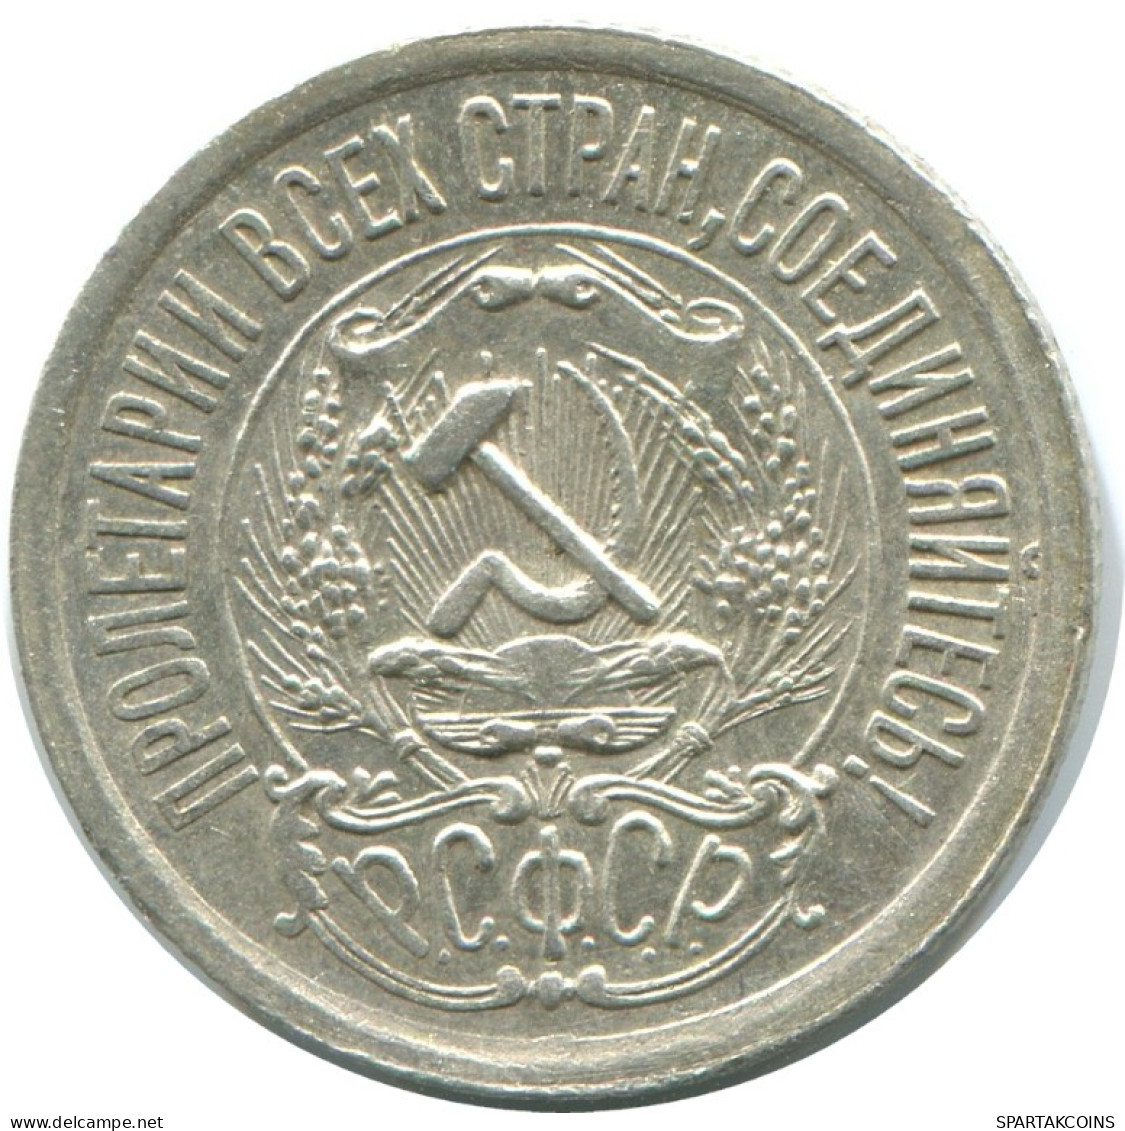 15 KOPEKS 1923 RUSSLAND RUSSIA RSFSR SILBER Münze HIGH GRADE #AF112.4.D.A - Russia